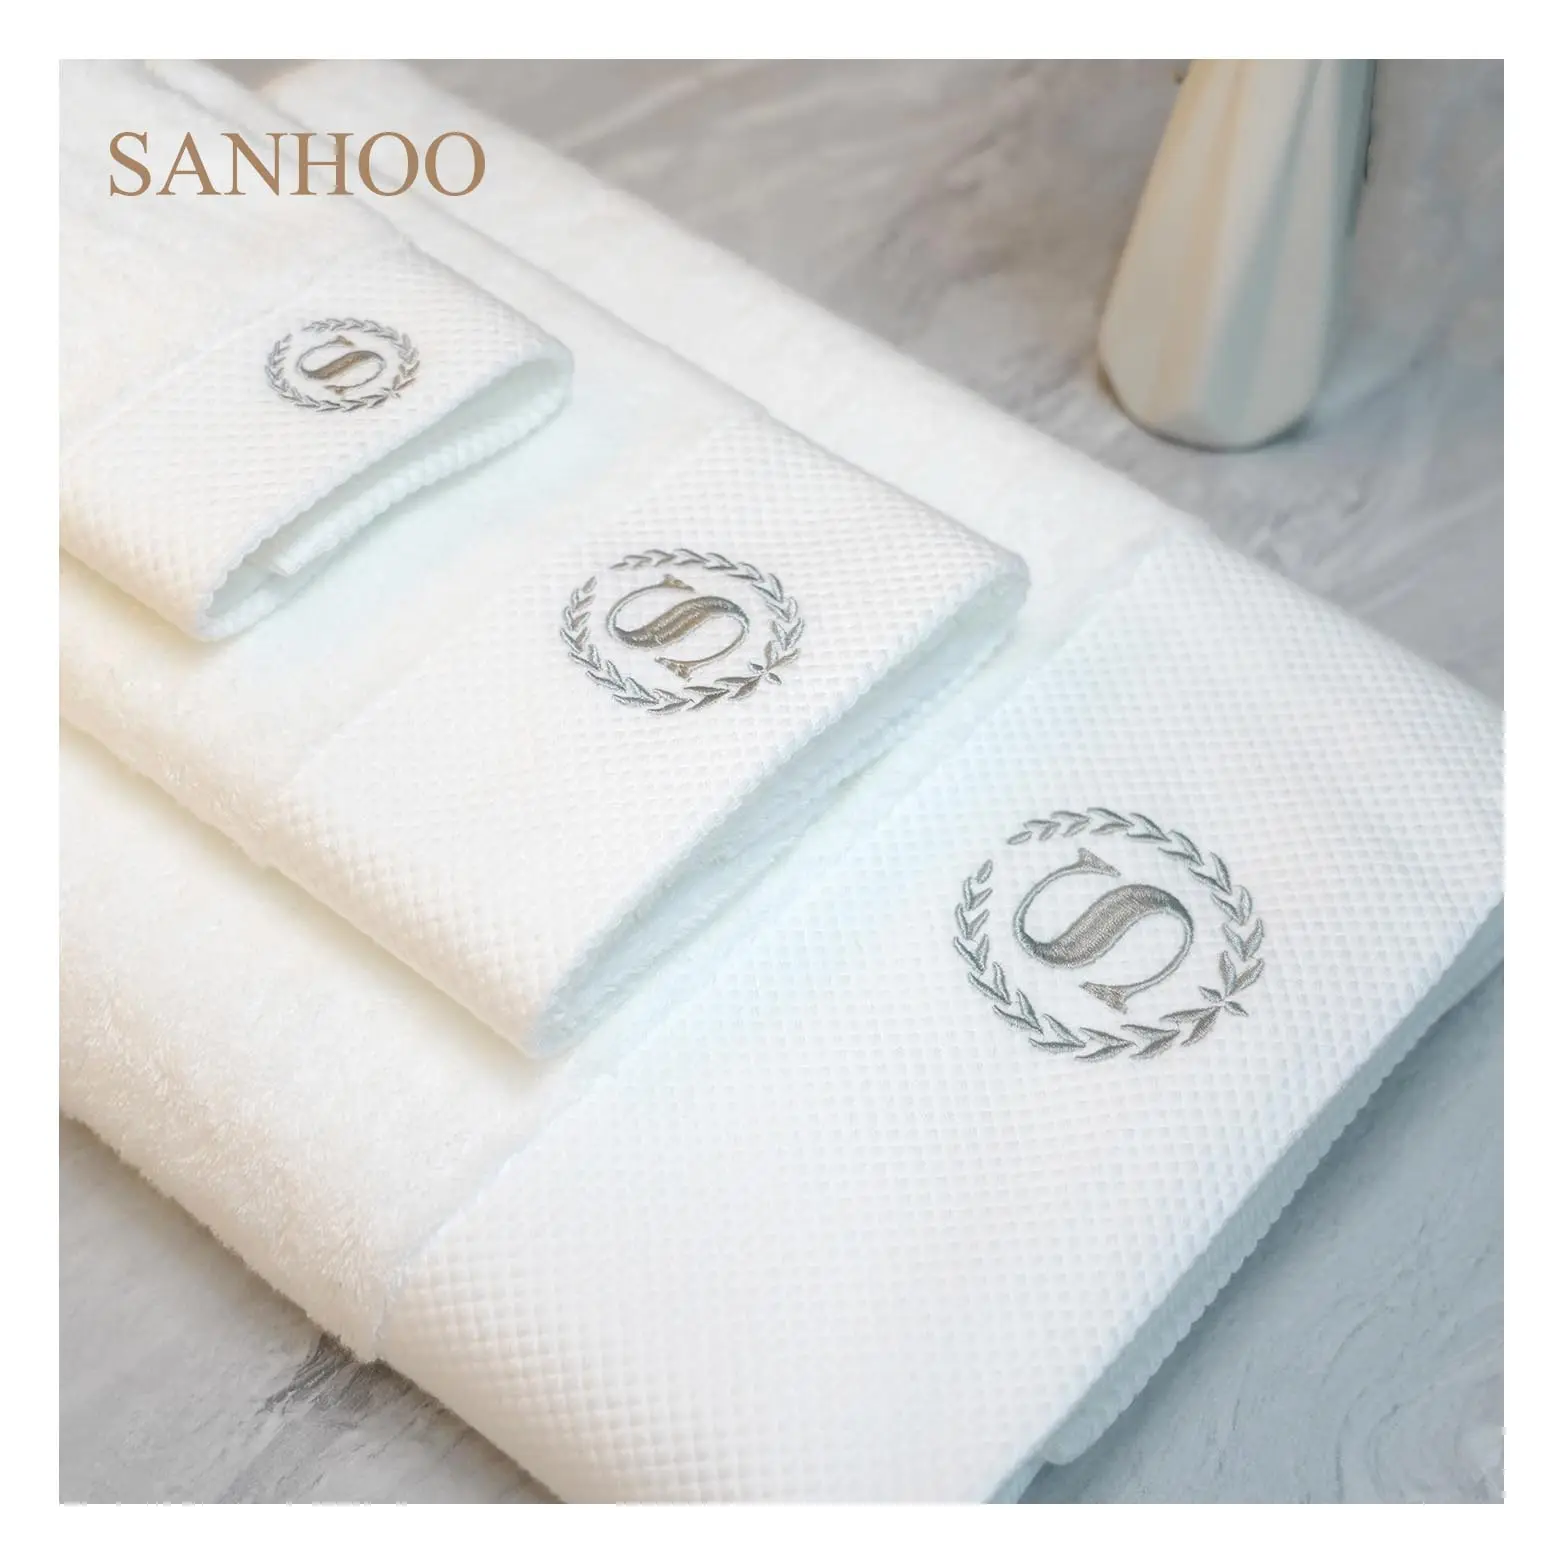 SANHOO 도매 화이트 부드러운 목욕 타올 면 70 140 고품질 테리 루프 수건 세트 호텔